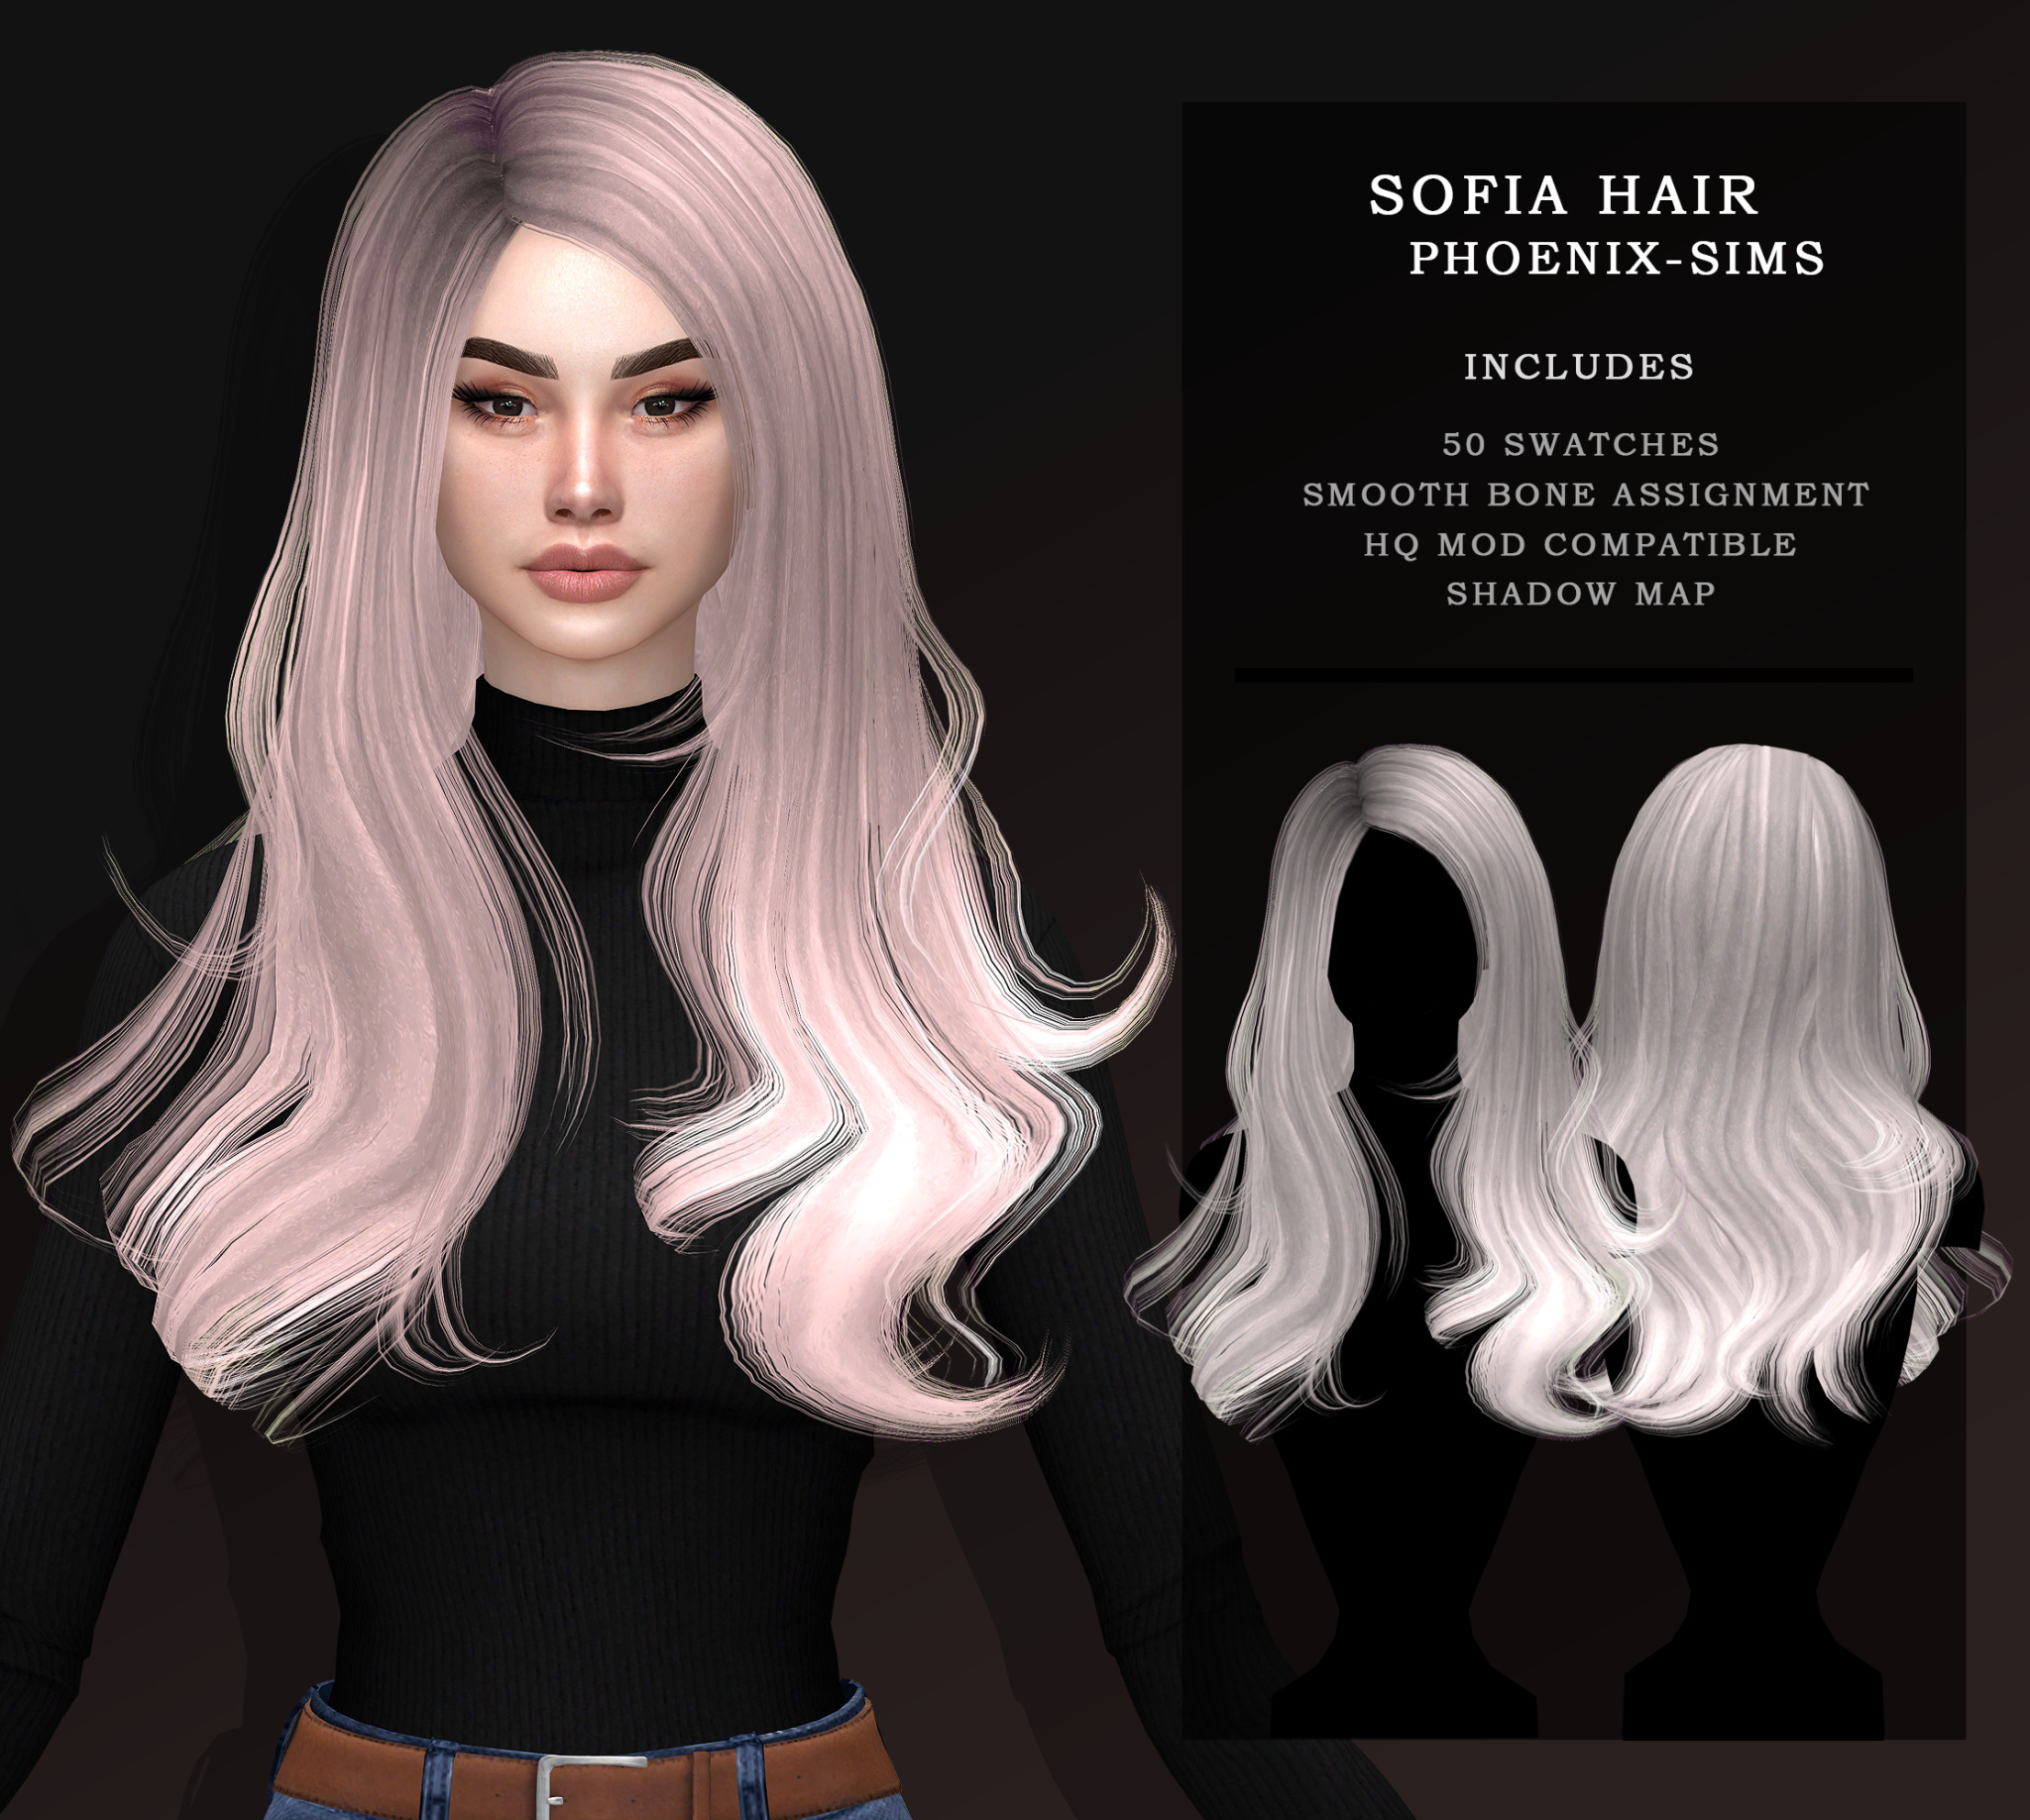 Sims 4 Hairs ~ Phoenix Sims: Sofia Hair
